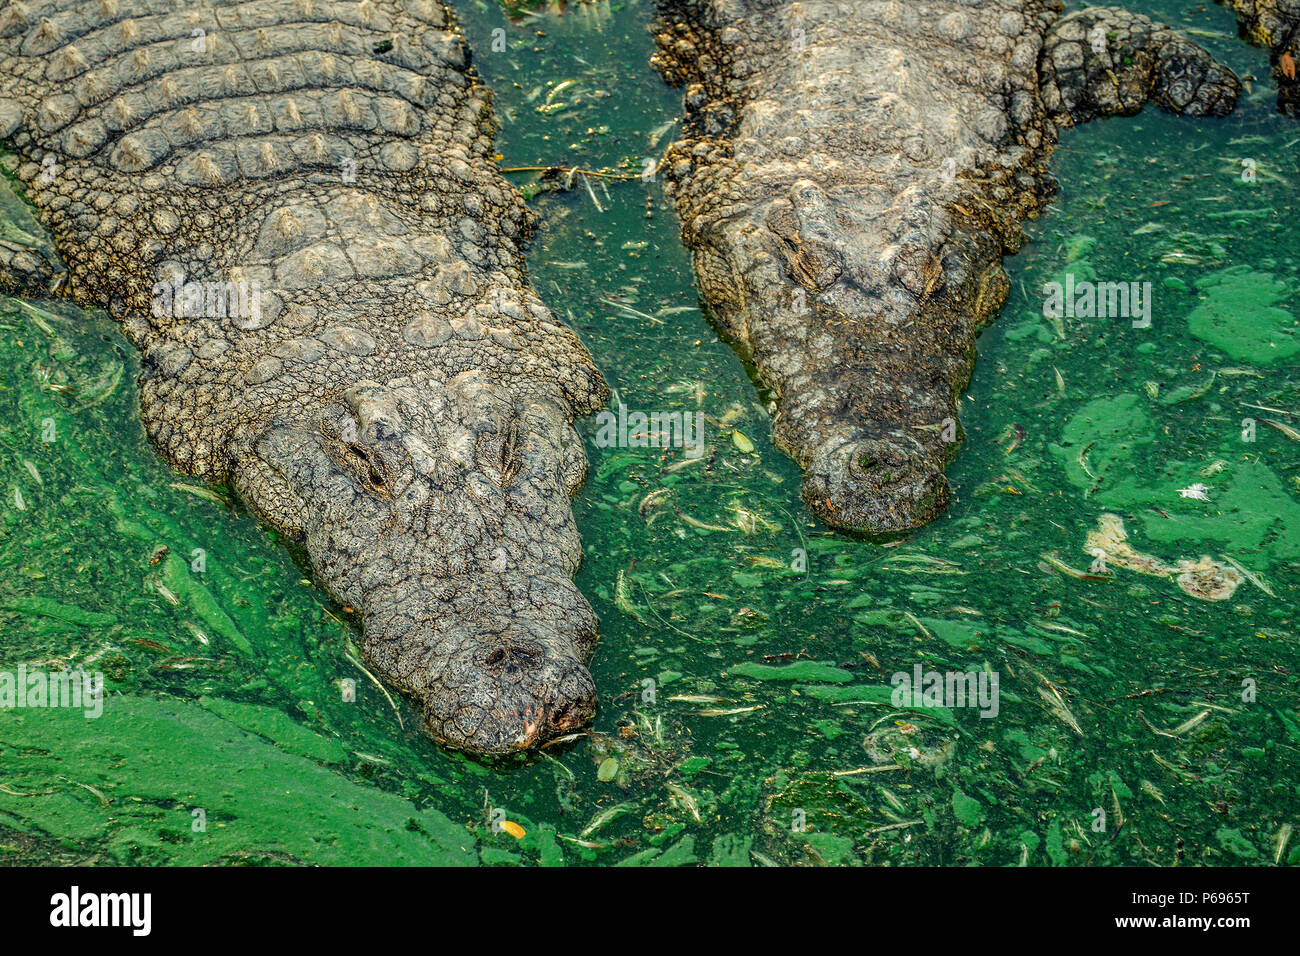 Zwei Nilkrokodile - Crocodylus niloticus - von oben, in Wasser mit grünen Algen und schwimmende Blätter. Stockfoto